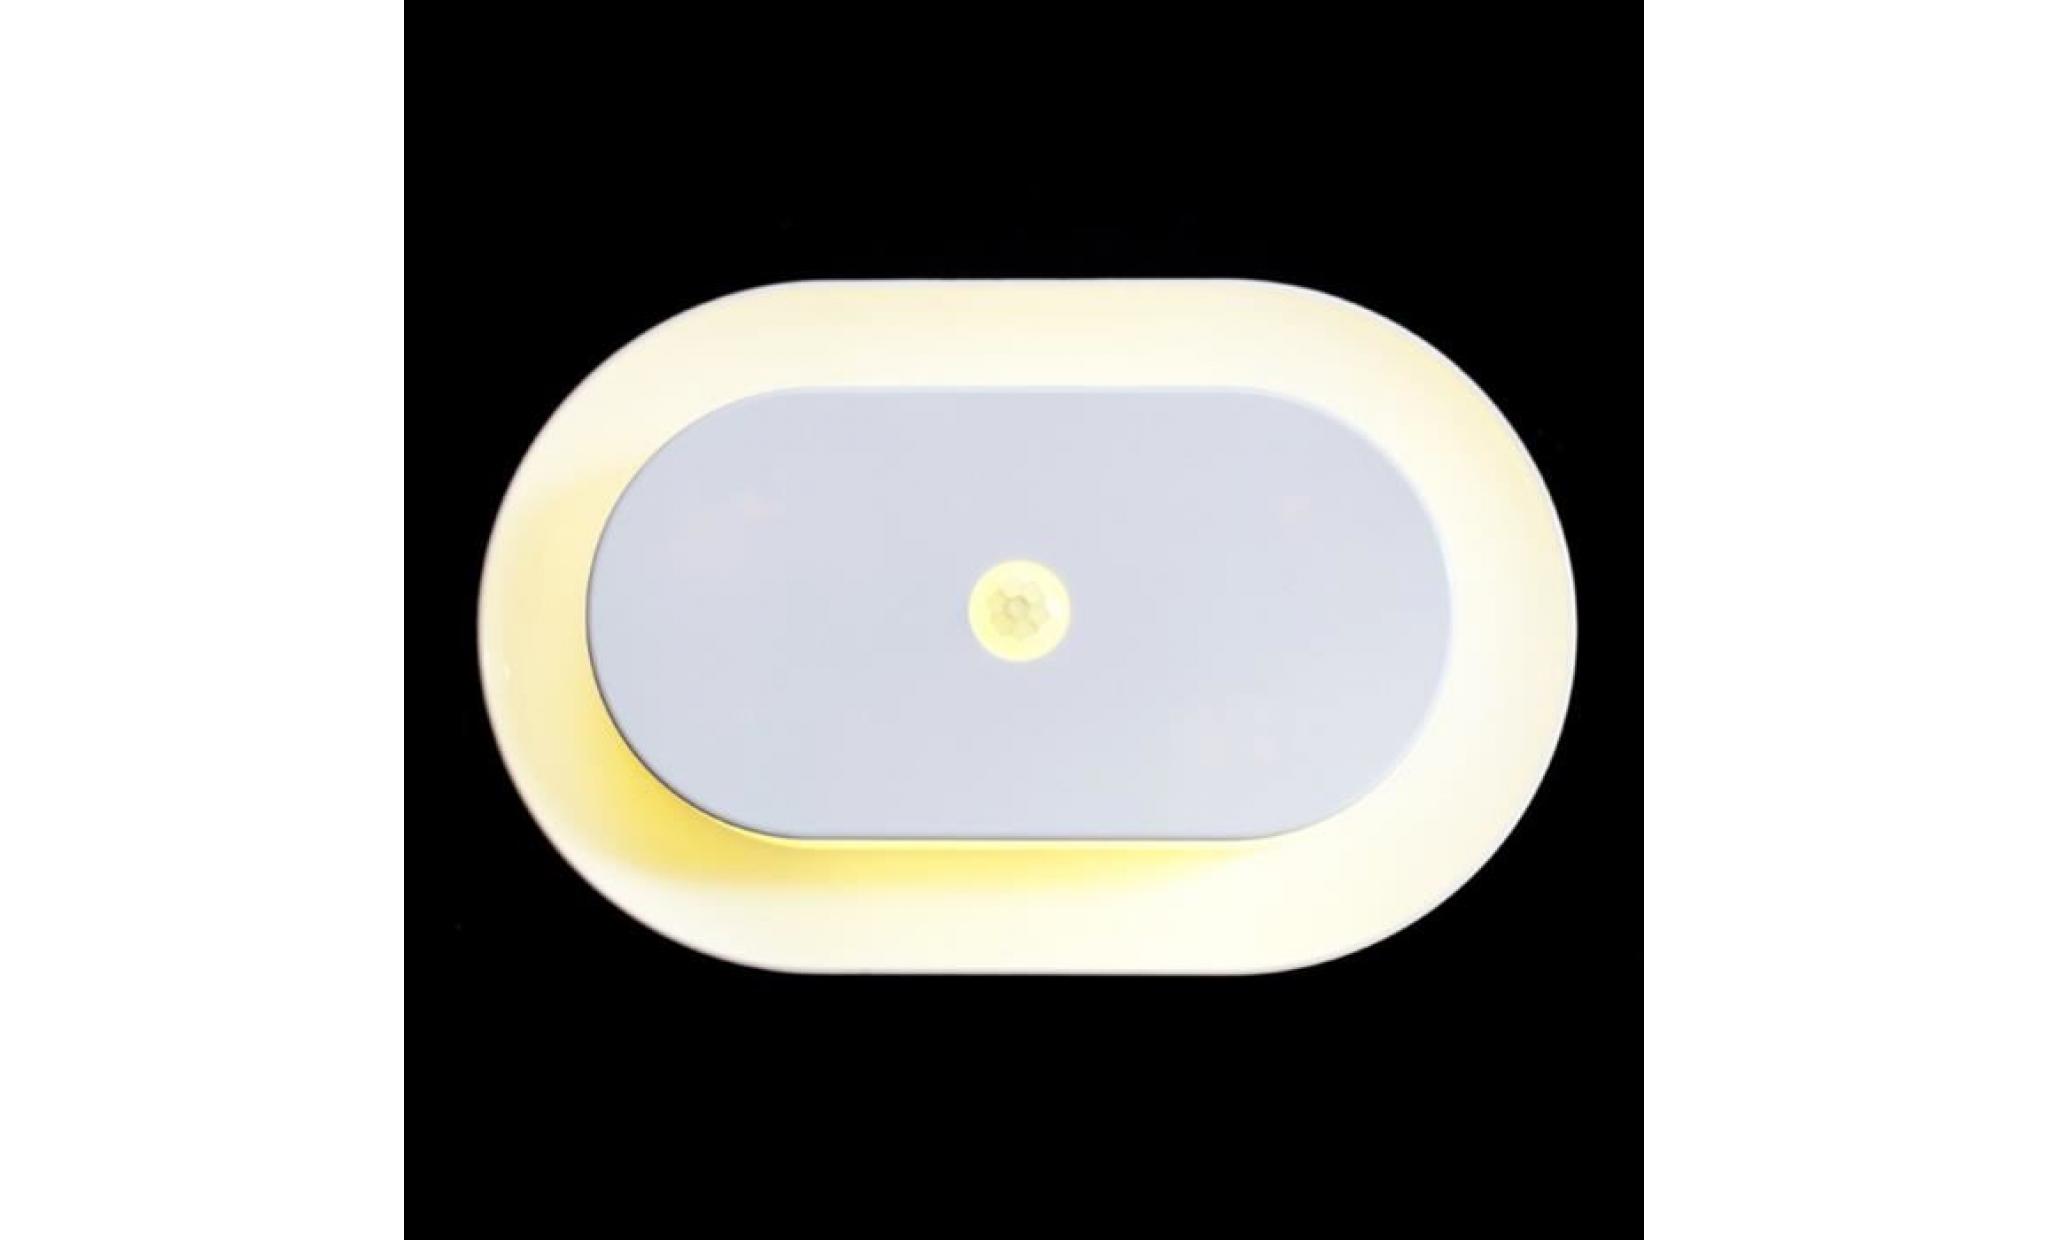 applique d'interieur mini auto led lumière corps humain induction pir motion sensor contrôle night light lampe warm blanc blanc